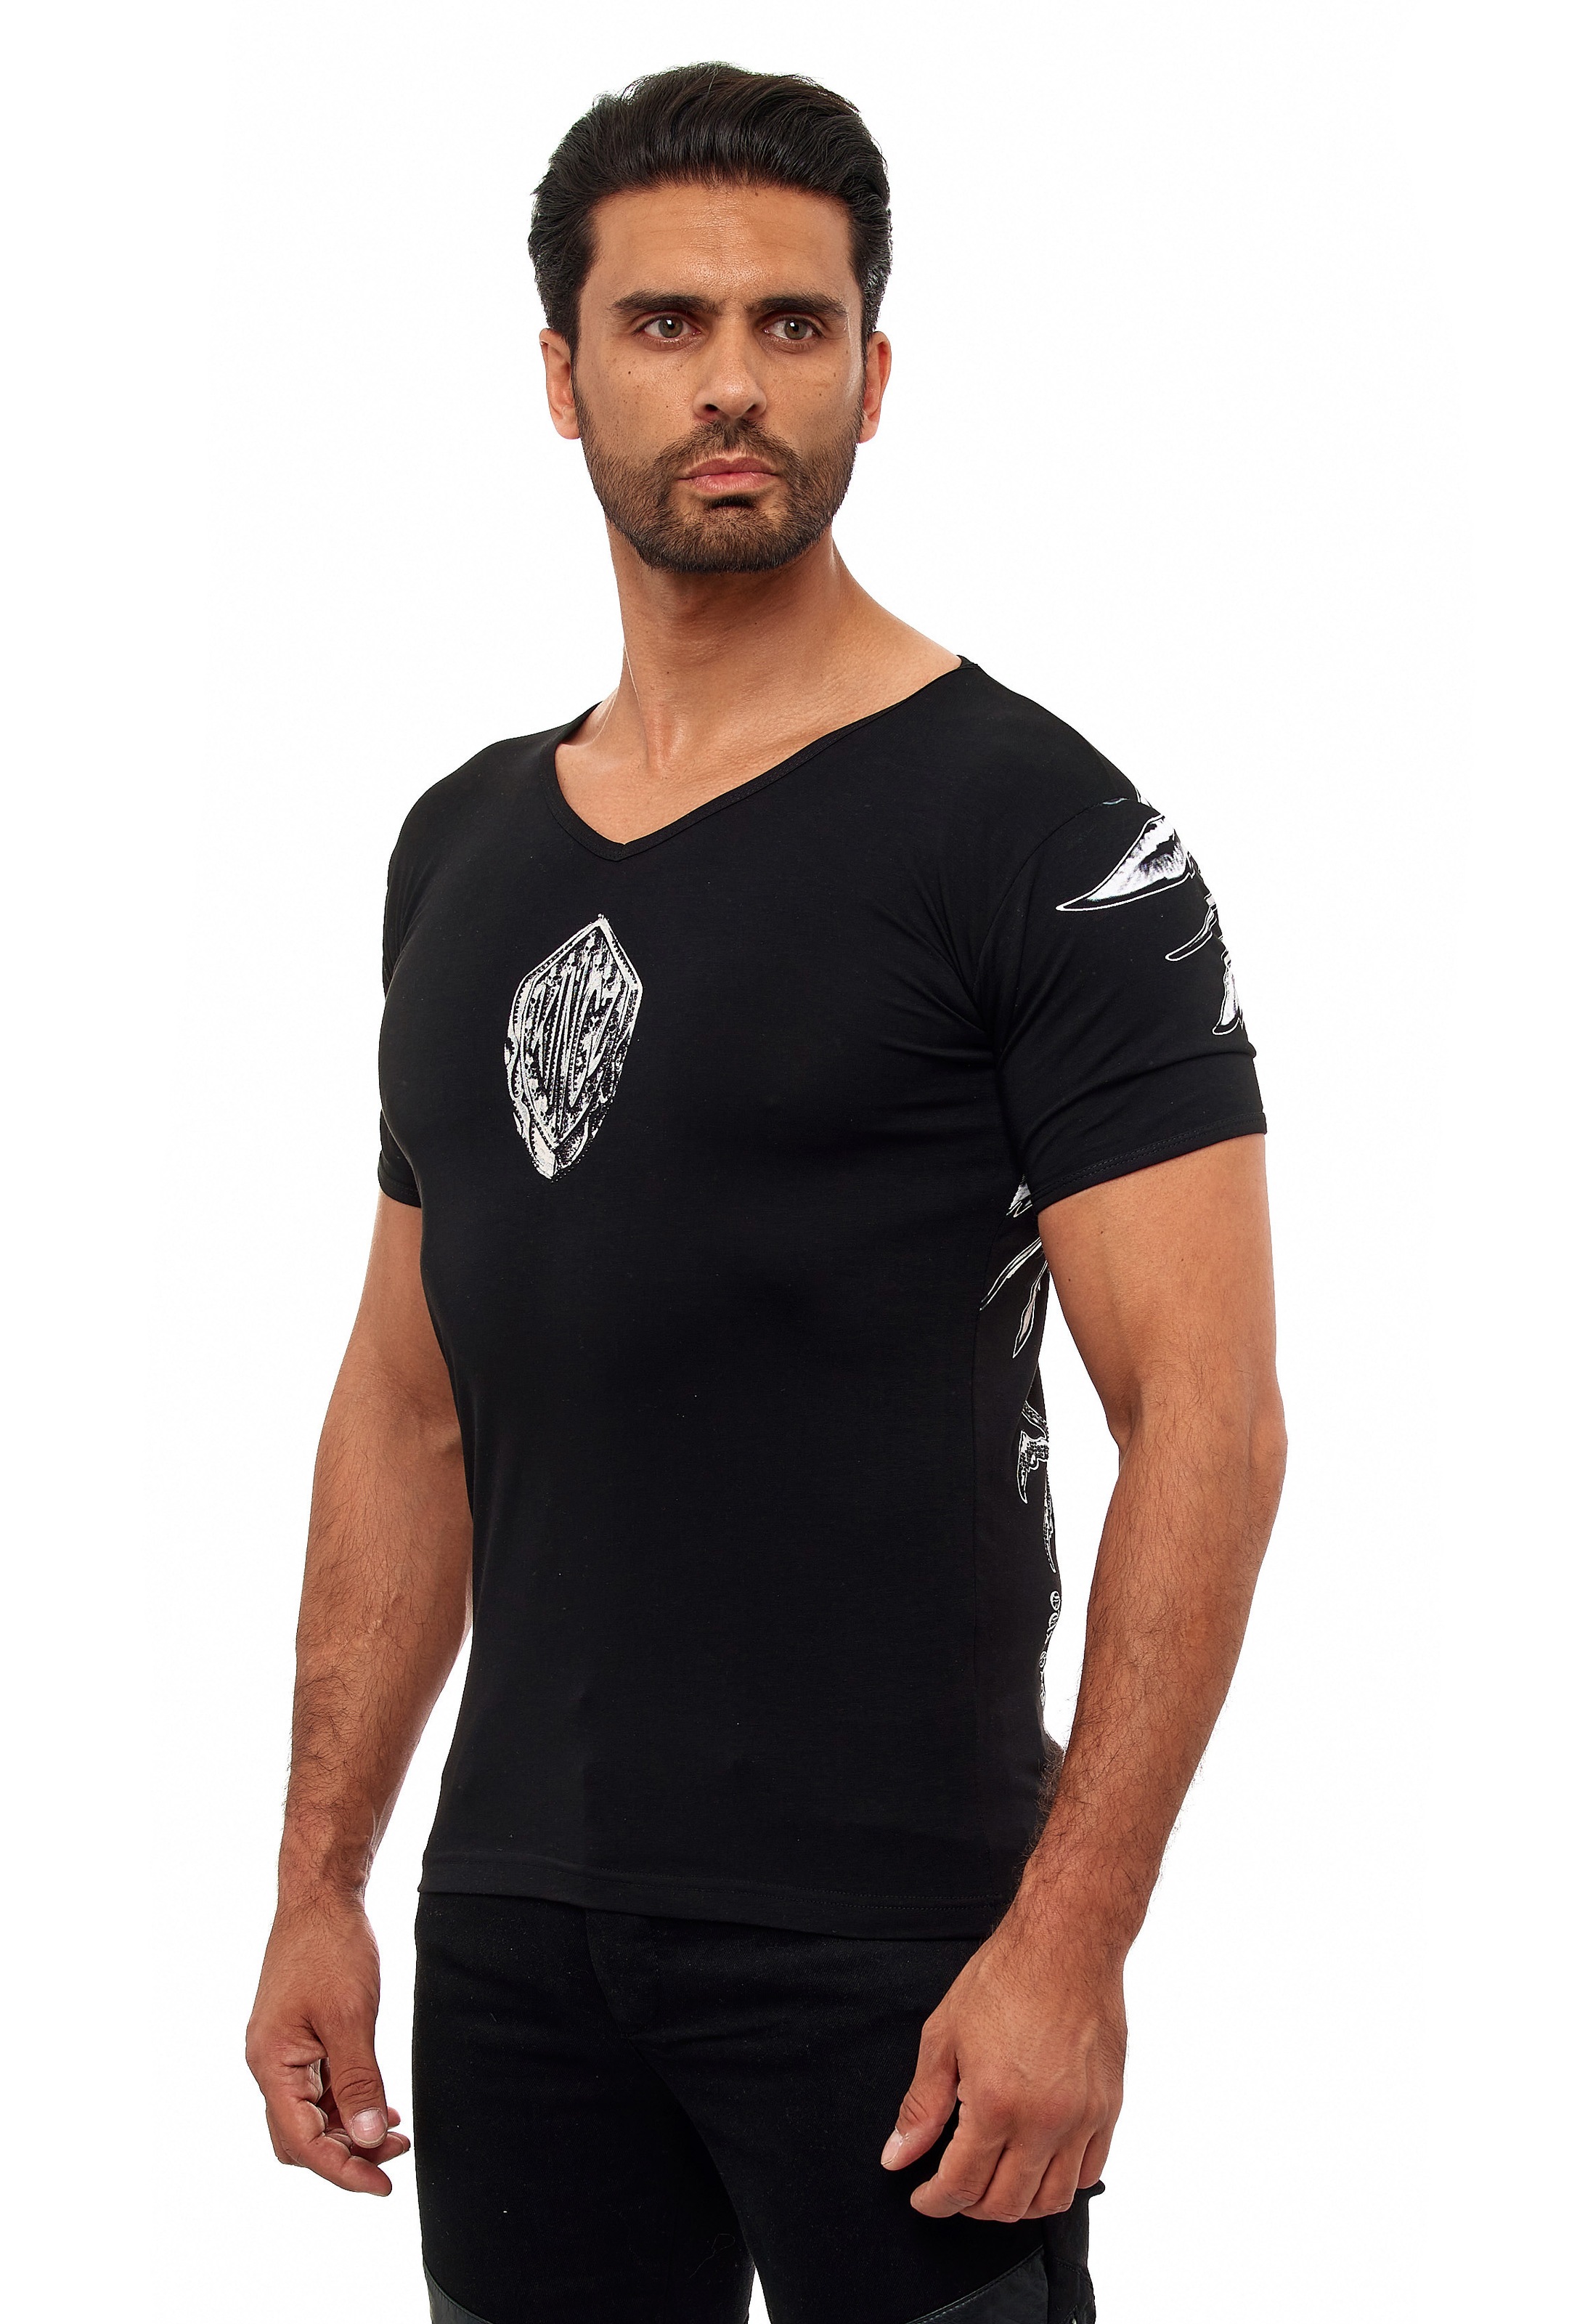 KINGZ T-Shirt, mit ausgefallenem Adler-Print